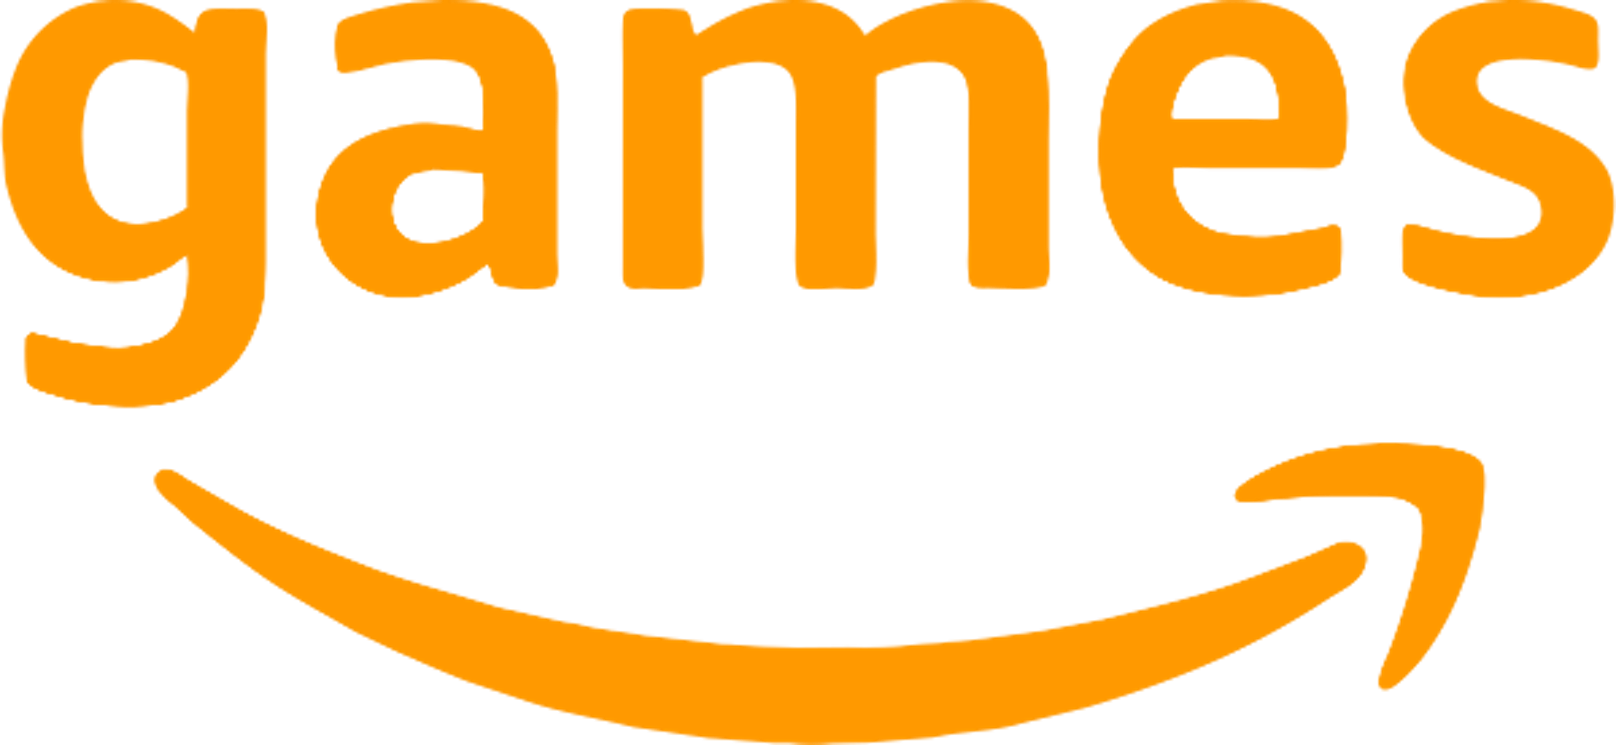 Amazon Games gibt Publishing-Deal mit Entwickler Glowmade bekannt.